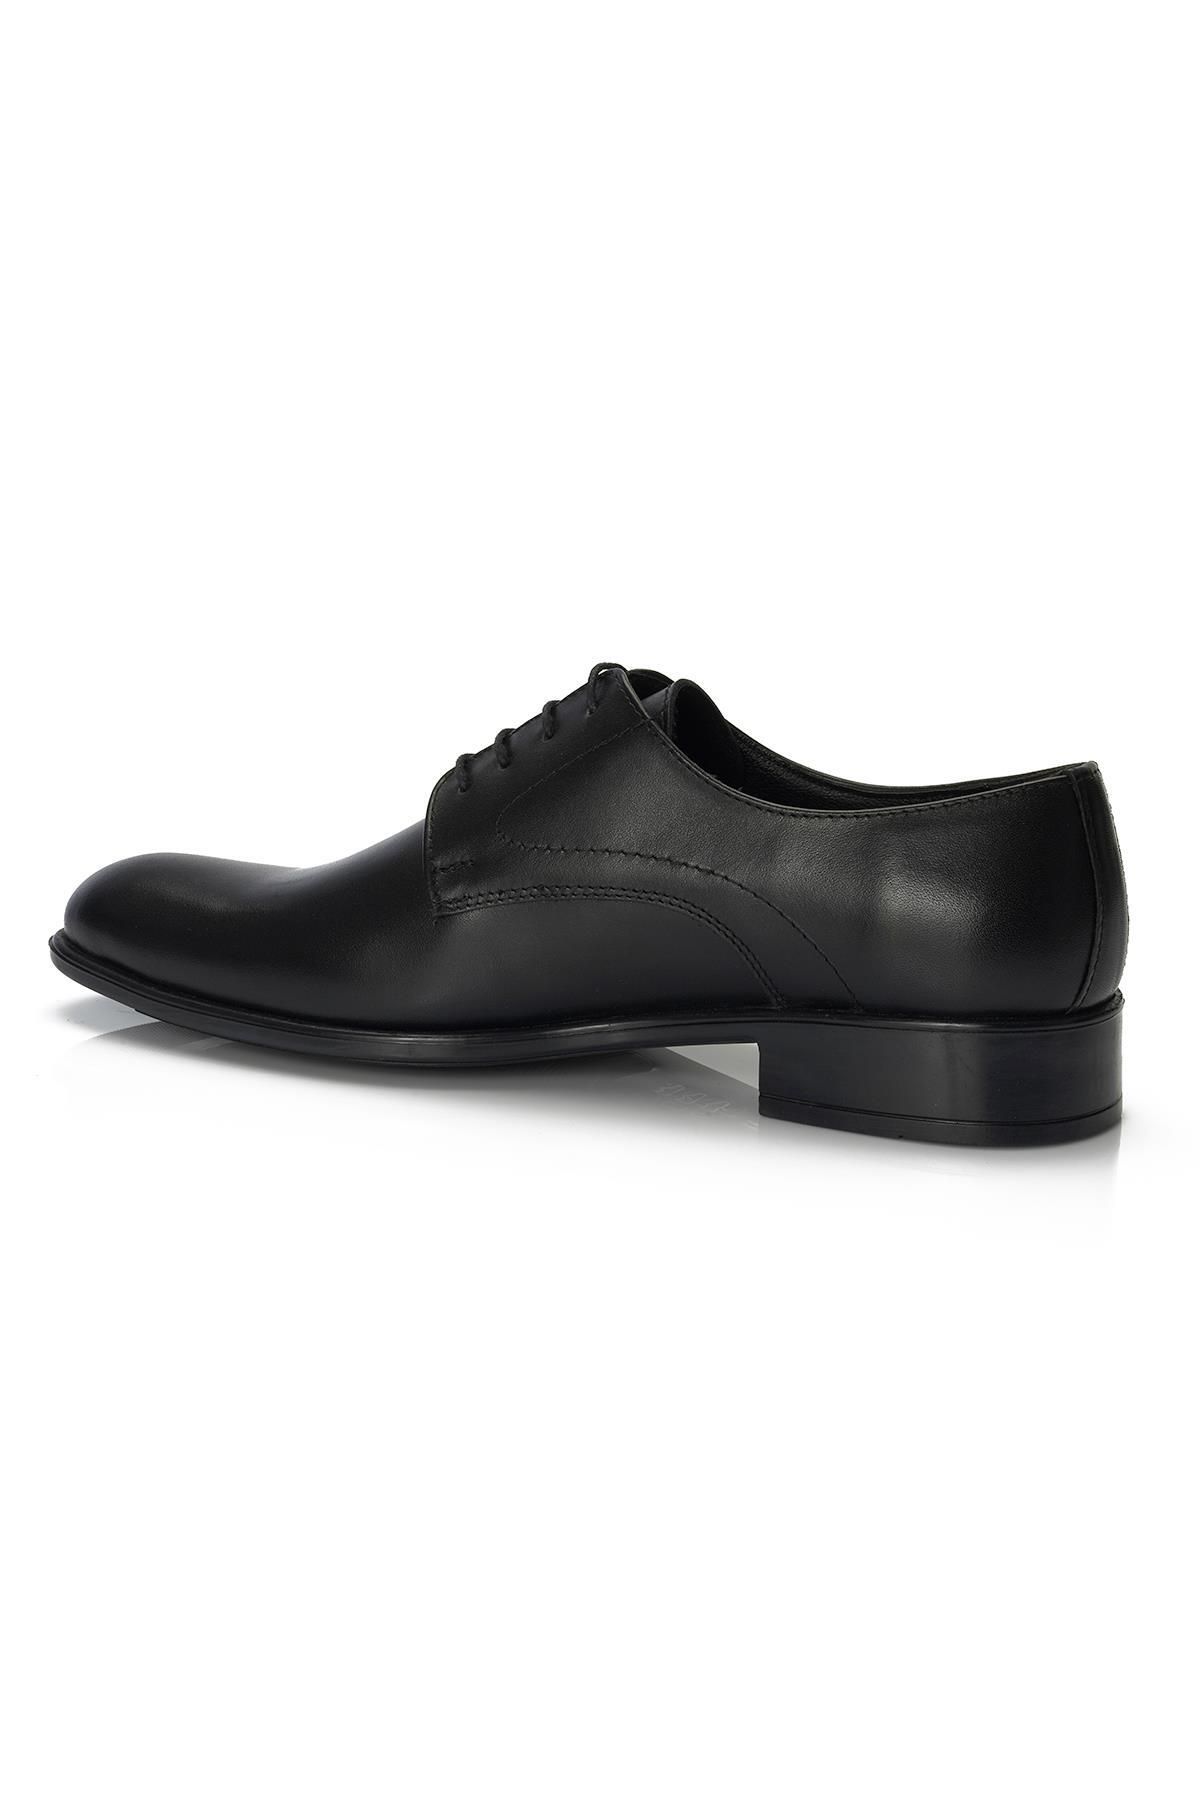 H043 Hakiki Deri Klasik Erkek Ayakkabı